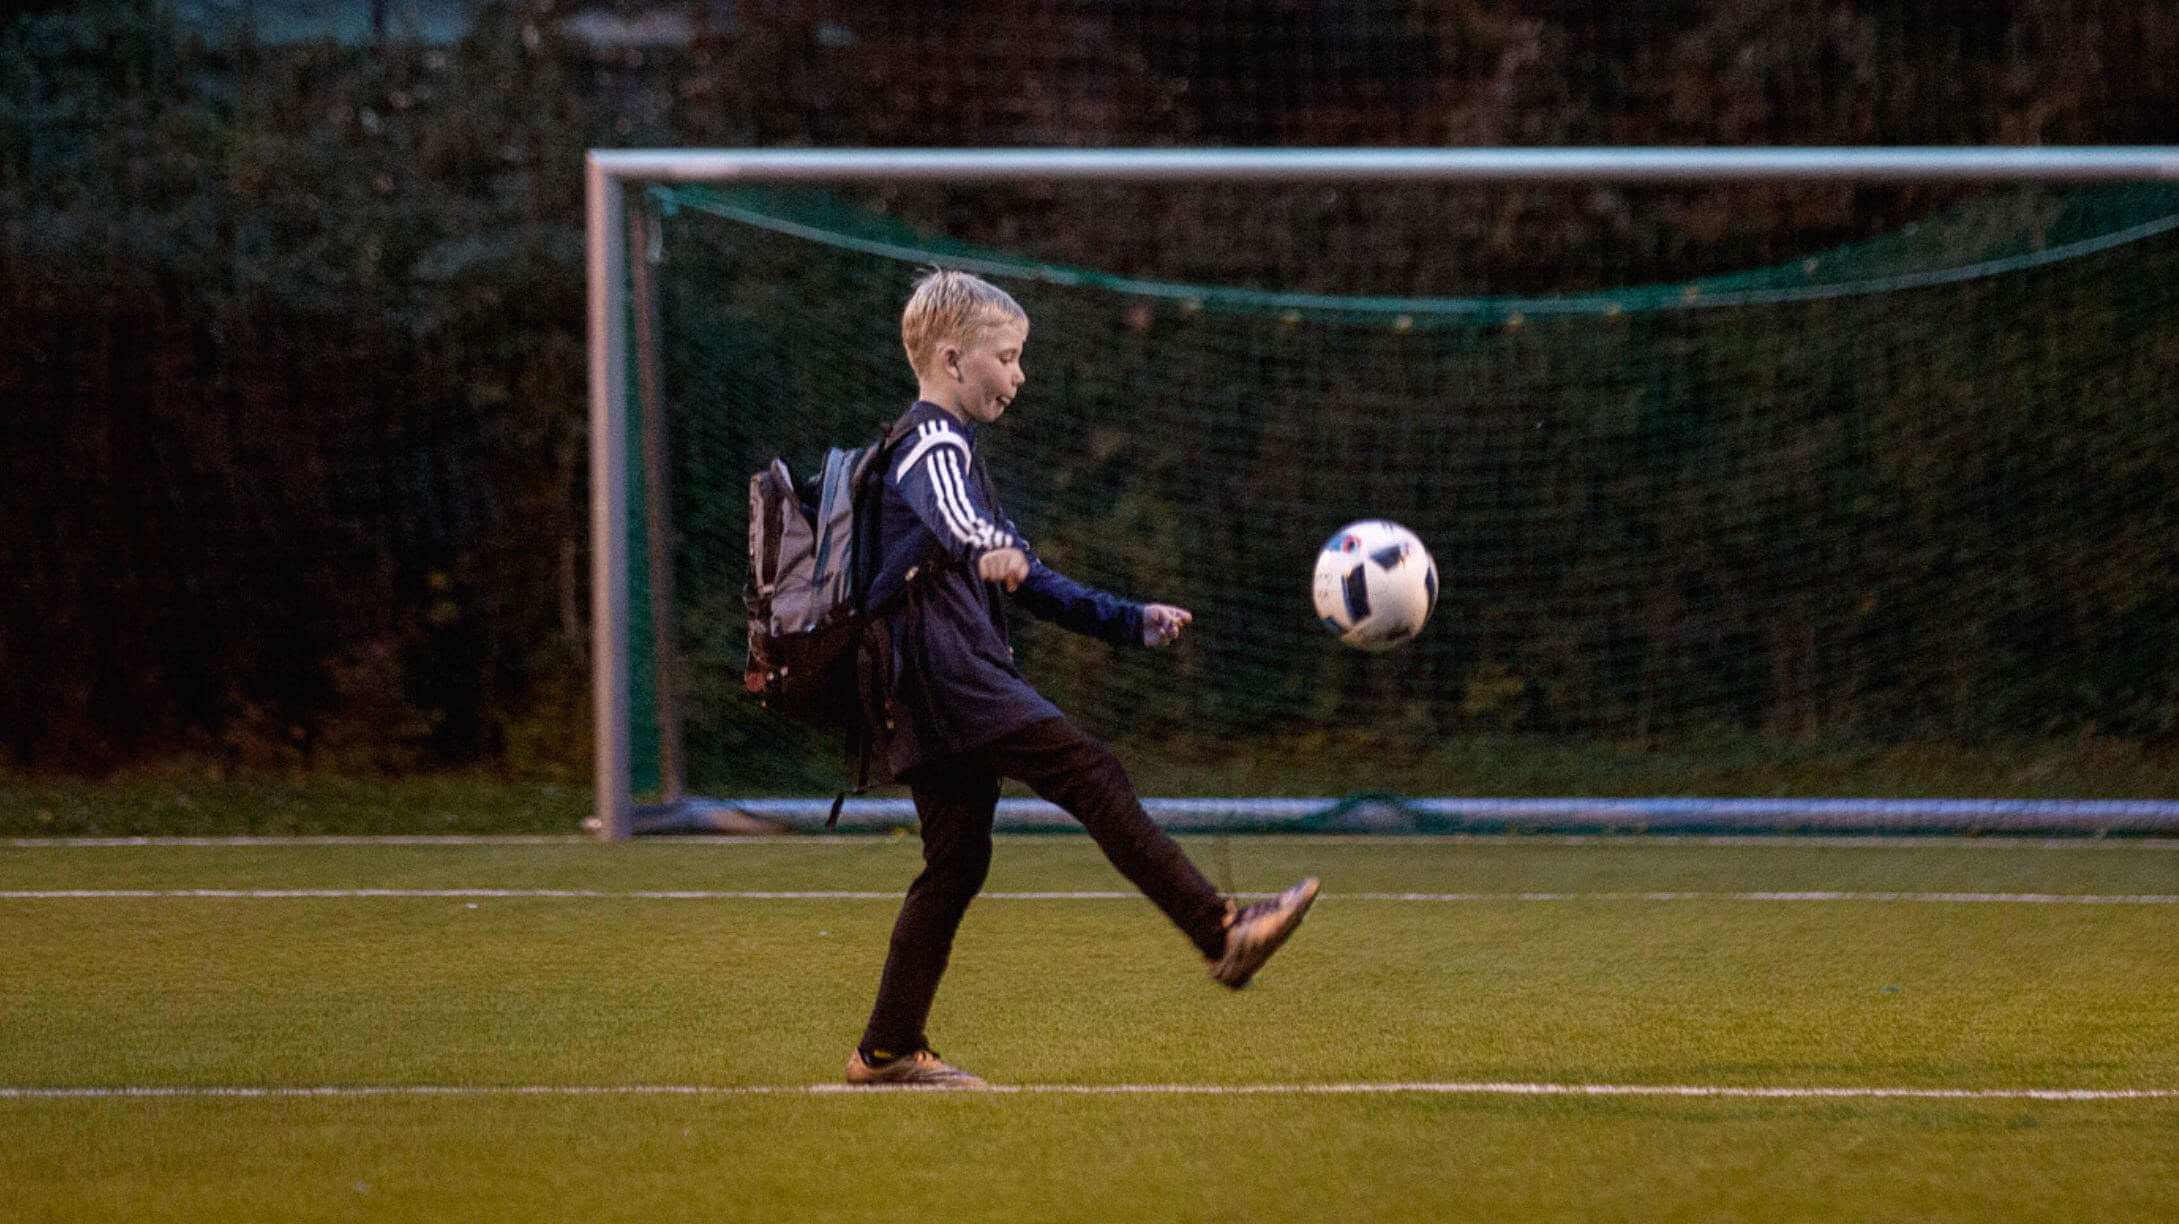 Bilde av en gutt som sparker fotball foran mål